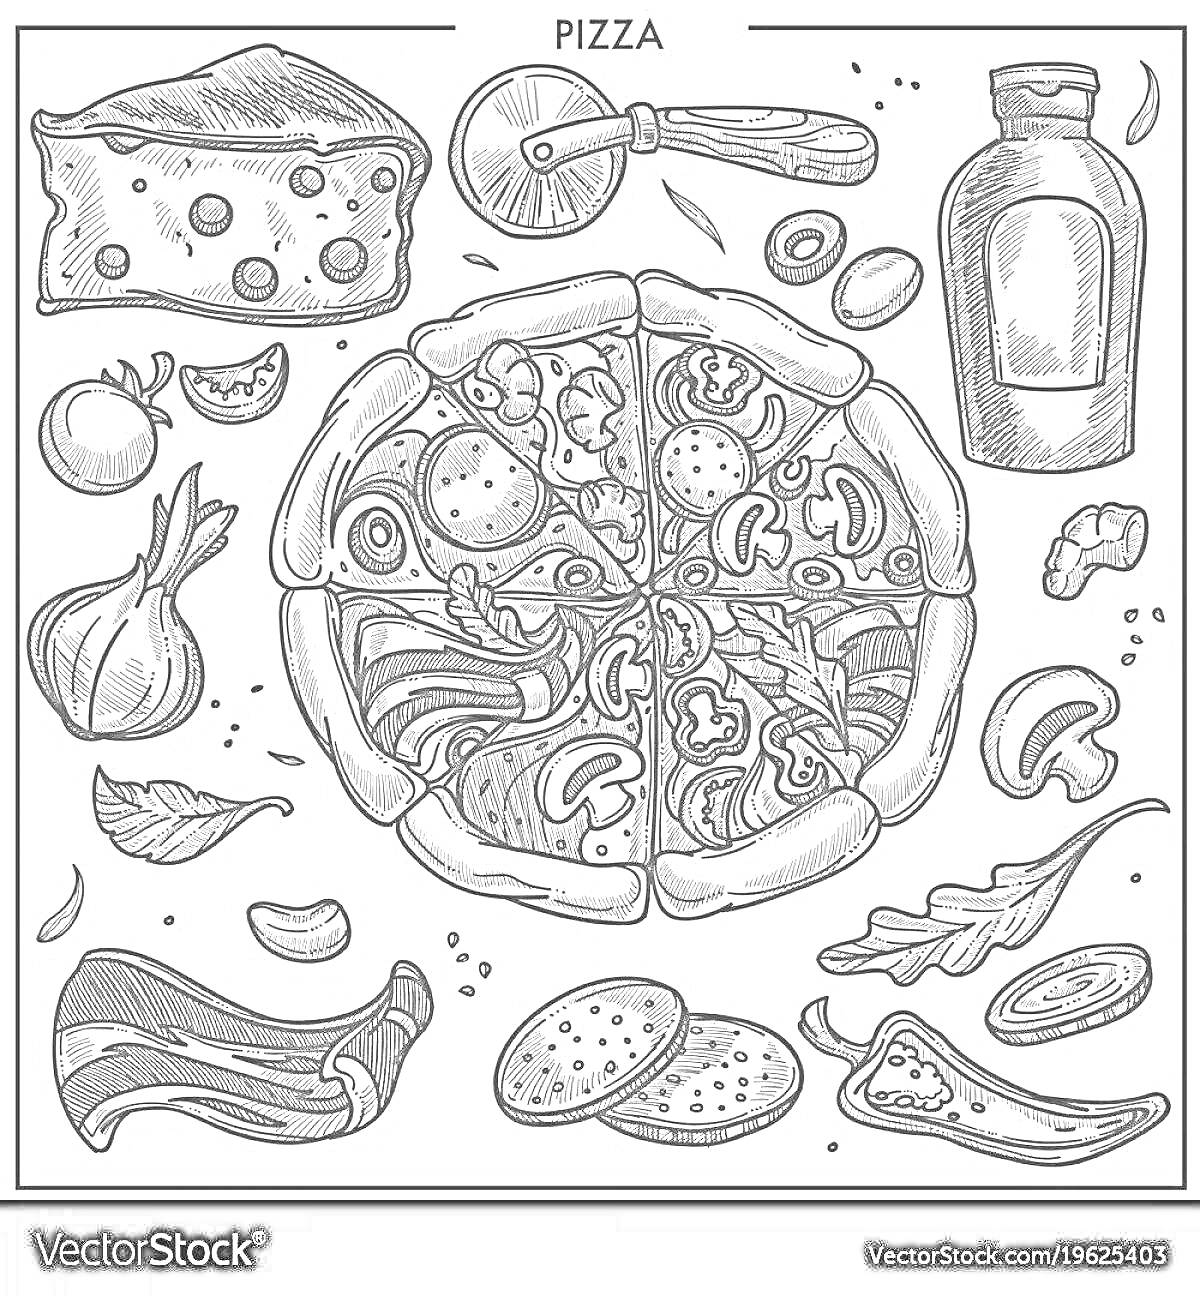 Раскраска Пицца и ингредиенты: кусок сыра, нож для пиццы, бутылка с соусом, помидоры, лук, гриб, салатные листья, баклажан, две колбаски, ароматная трава, чеснок, кусок мяса